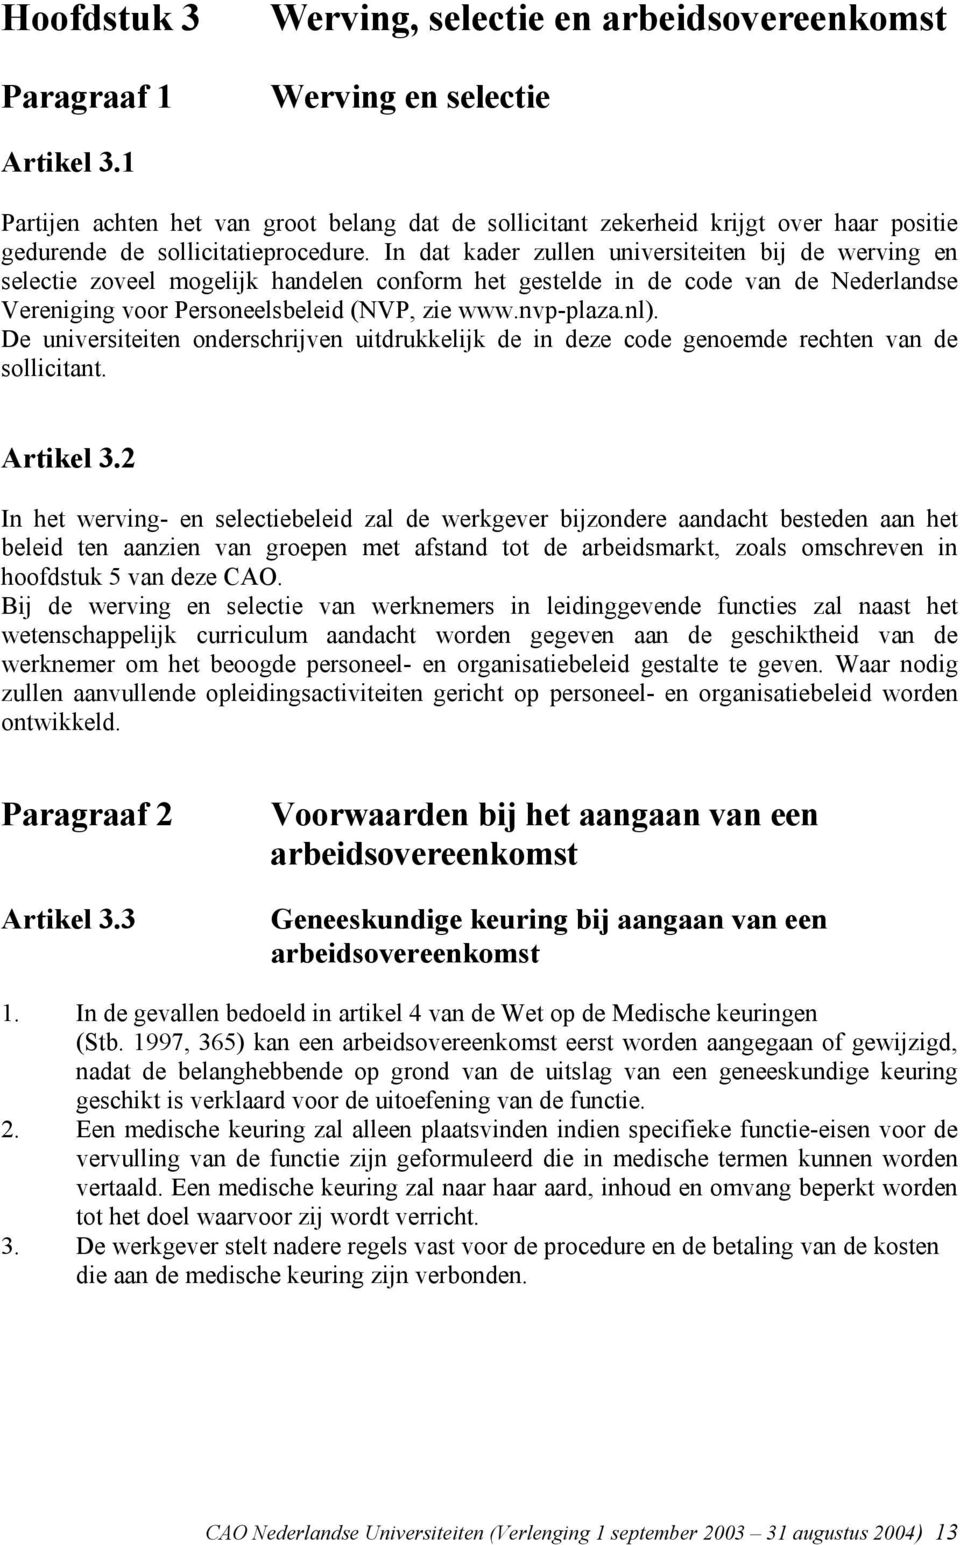 In dat kader zullen universiteiten bij de werving en selectie zoveel mogelijk handelen conform het gestelde in de code van de Nederlandse Vereniging voor Personeelsbeleid (NVP, zie www.nvp-plaza.nl).